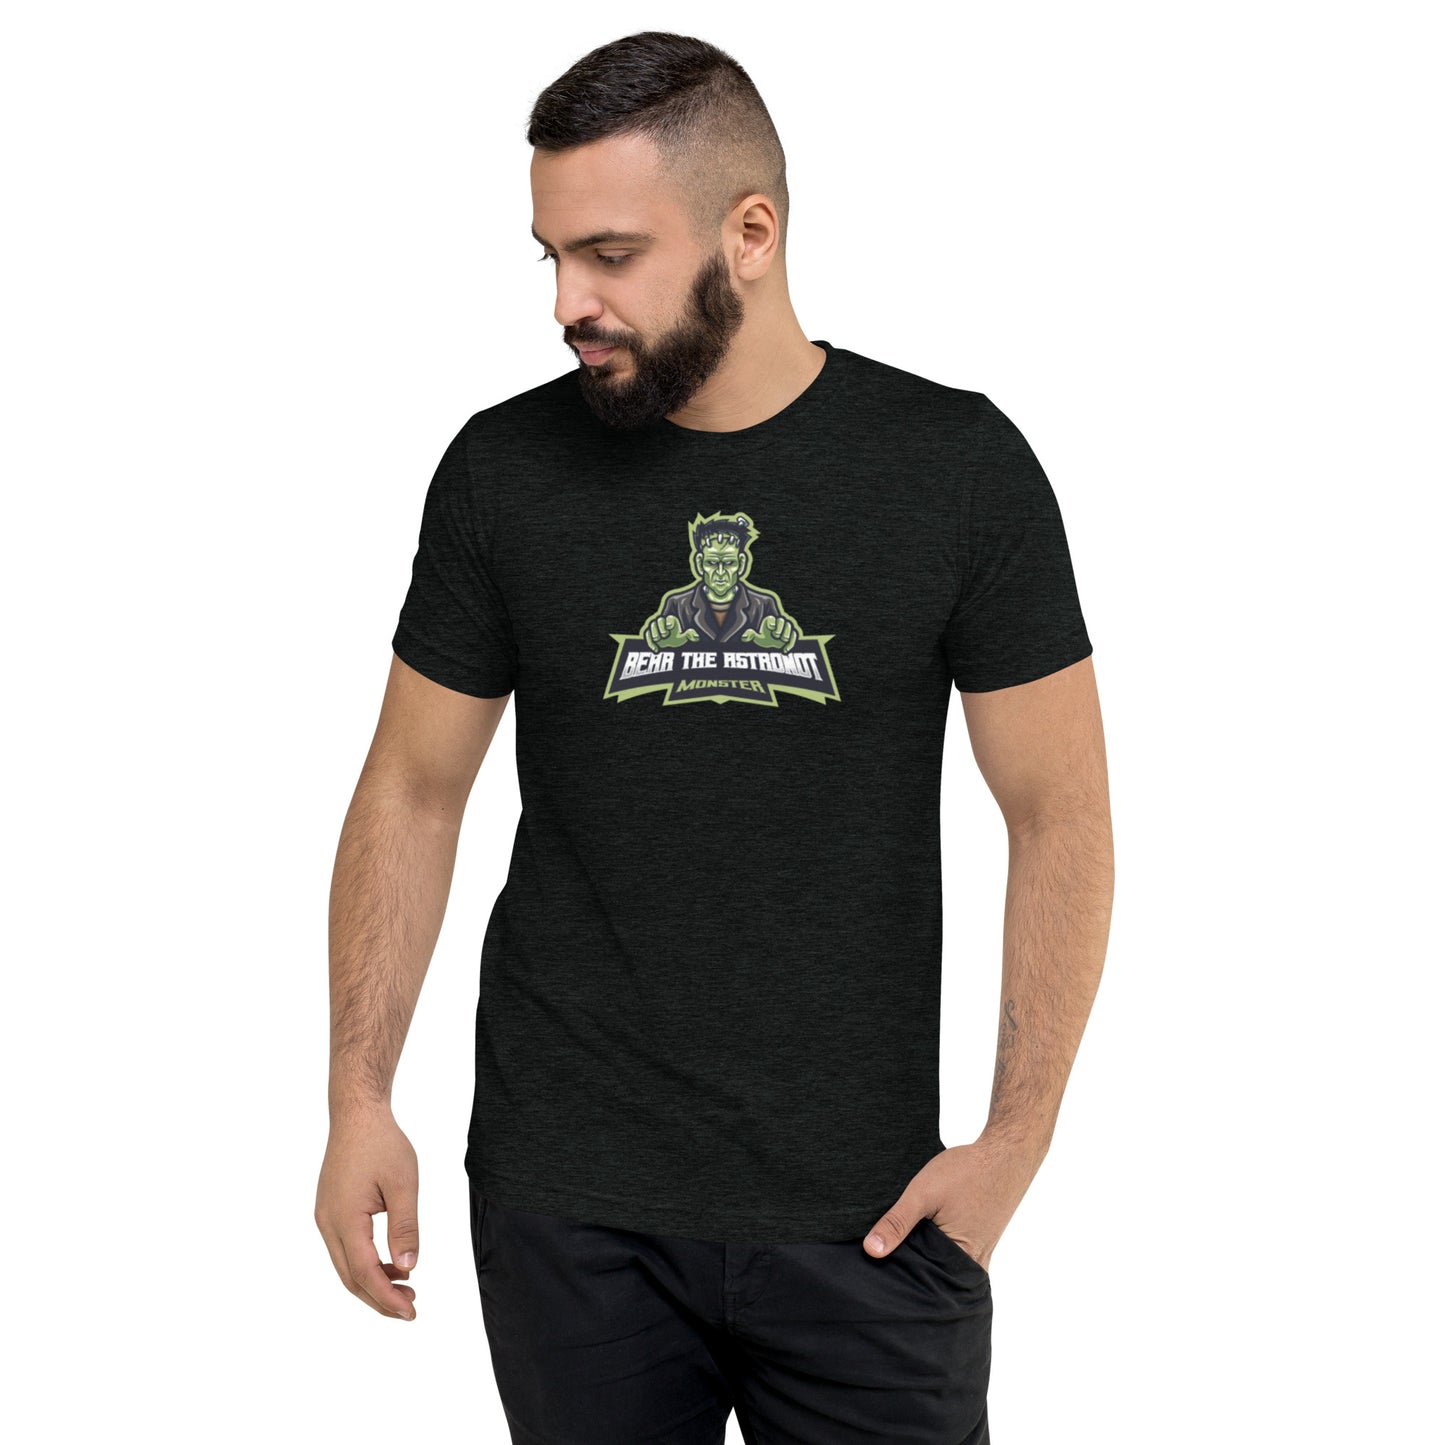 Bear the Astronot - Frankenstein Monster T-Shirt